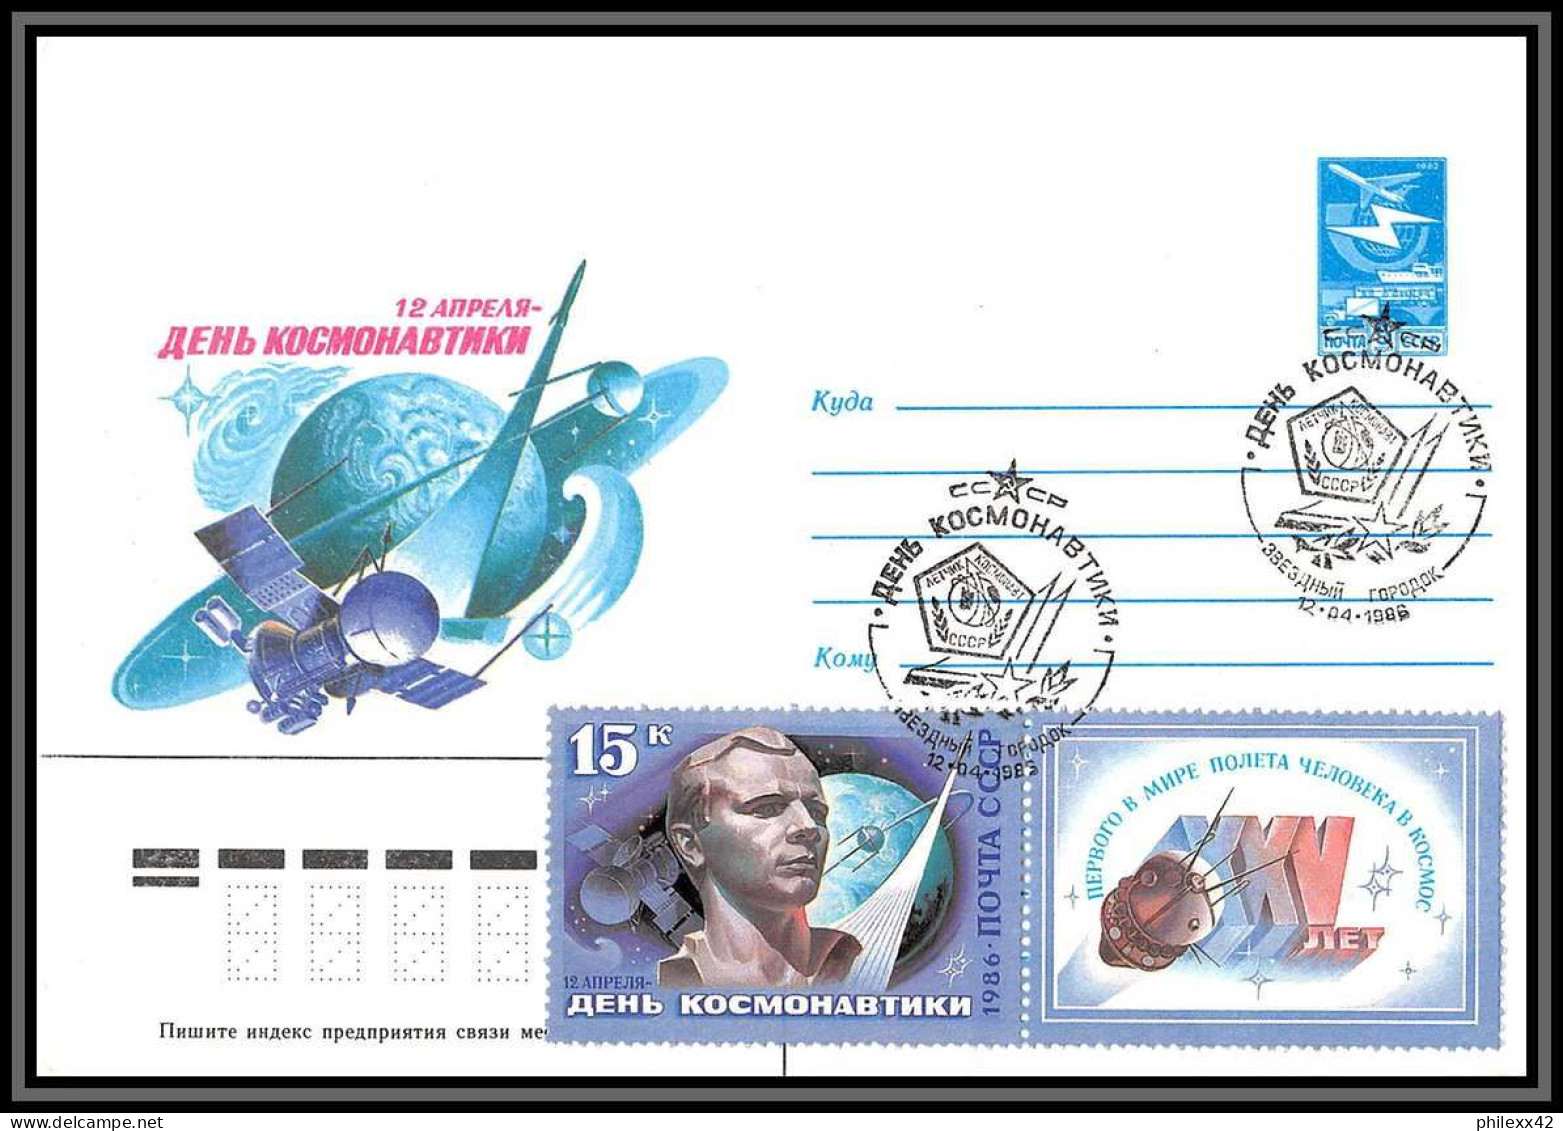 3285 Espace (space) Entier Postal Stationery Russie Russia Urss USSR 12/4/1986 Cosmonauts Day Gagarine Gagarin - Russie & URSS